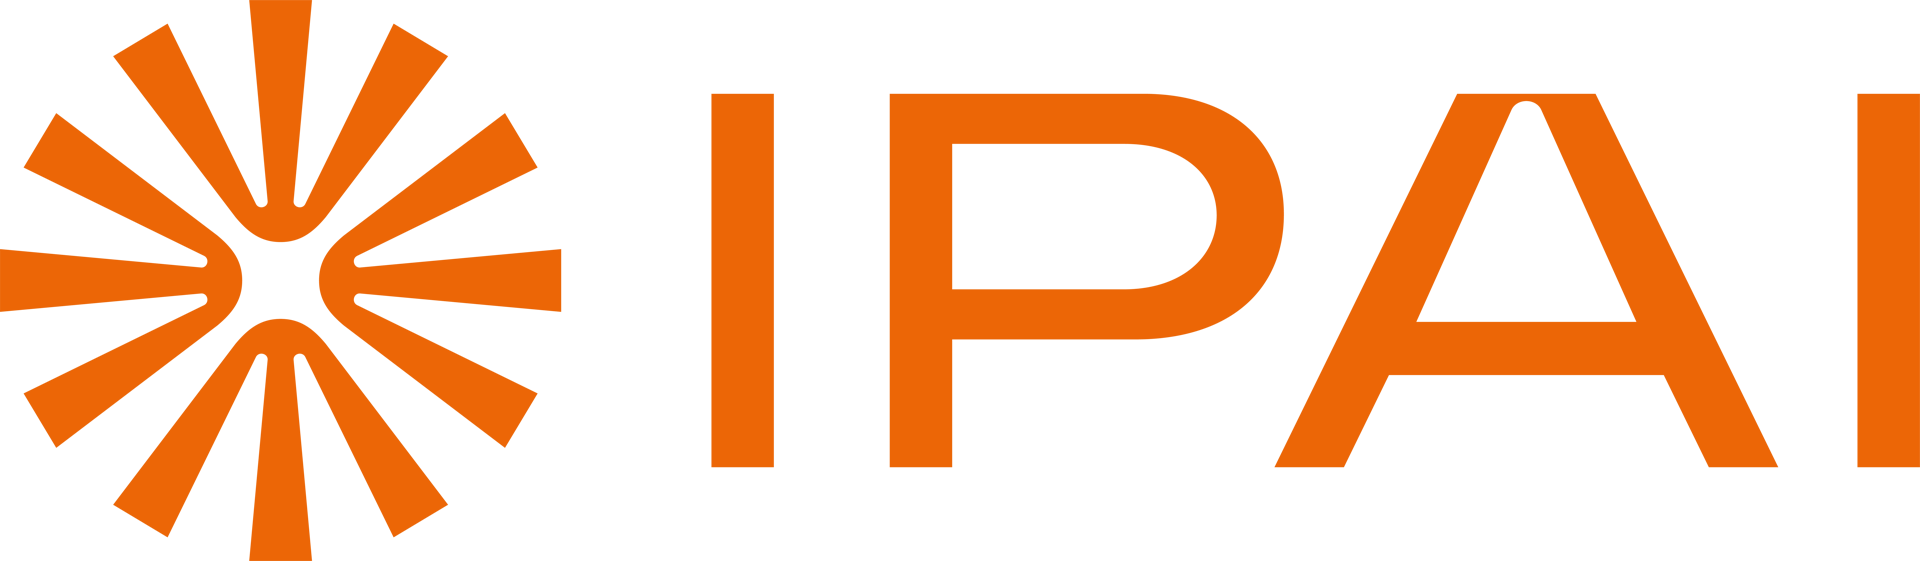 Das Logo ist orange und zeigt in Großbuchstaben den Schriftzug IPAI. Links daneben befindet sich ein sonnenartiges Symbol.